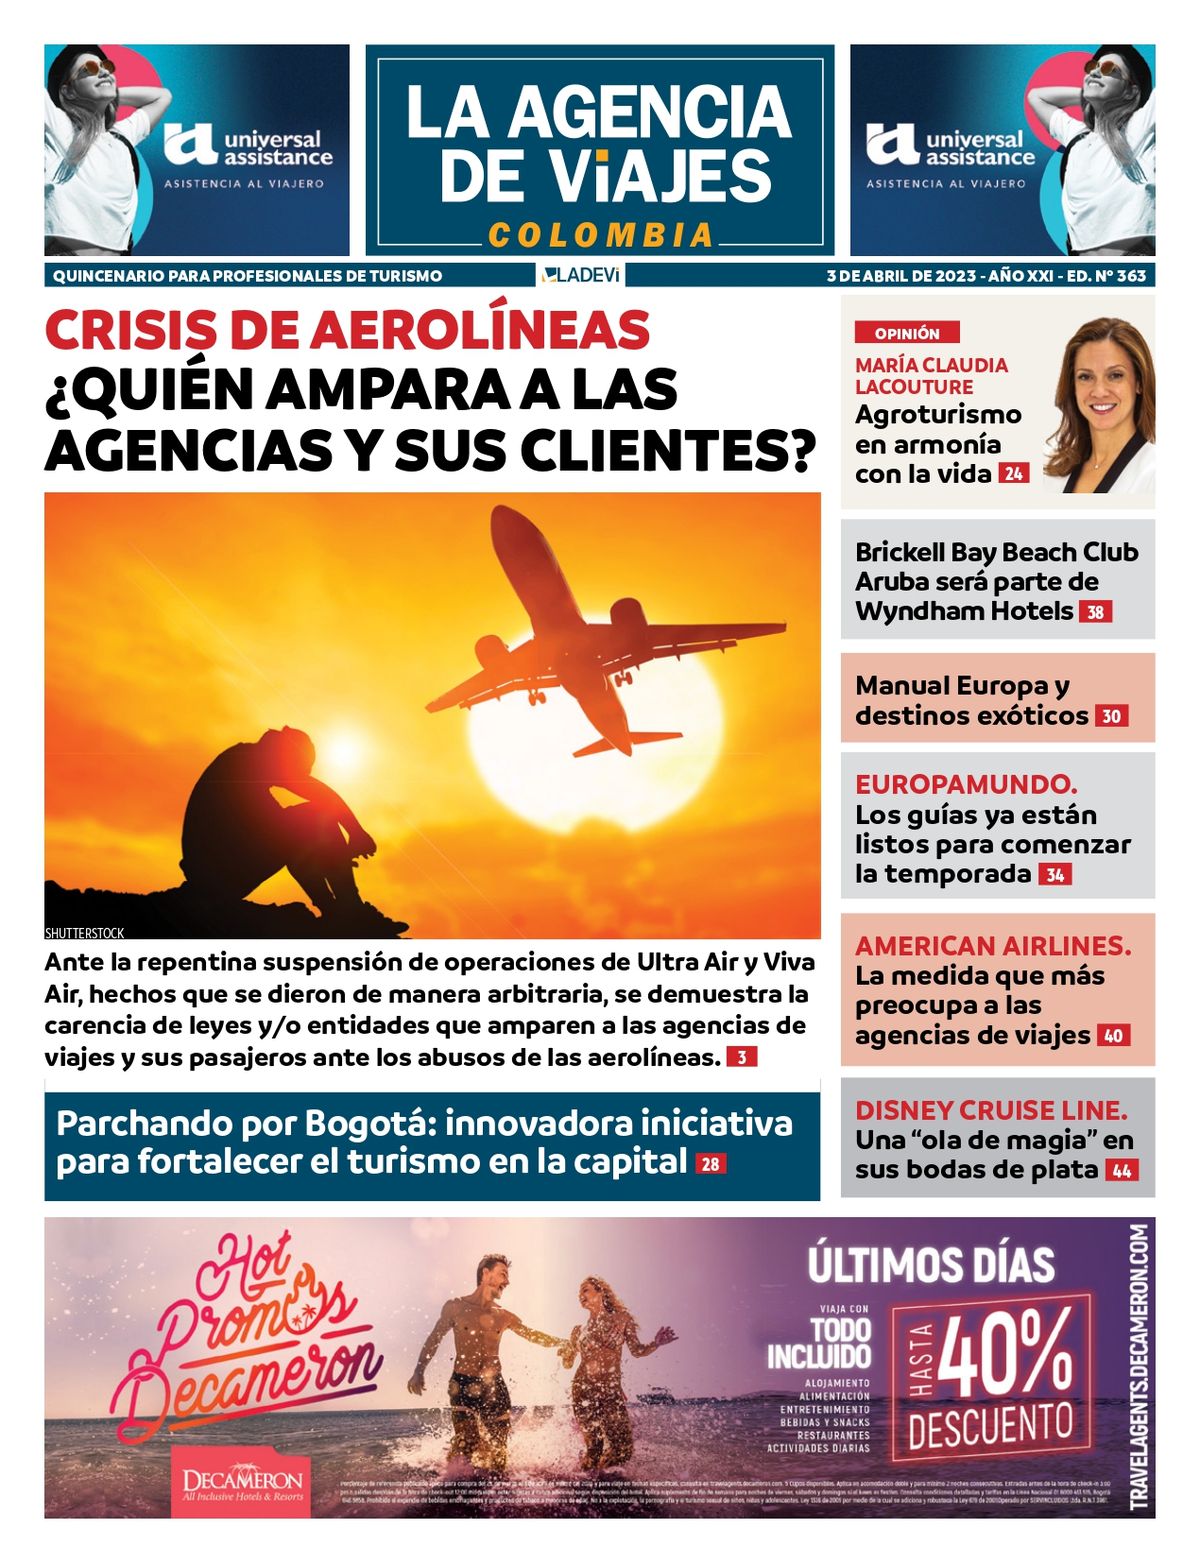 {altText(<p>Revista La Agencia de Viajes, edición #363.</p>,Revista La Agencia de Viajes: nueva edición ya disponible)}